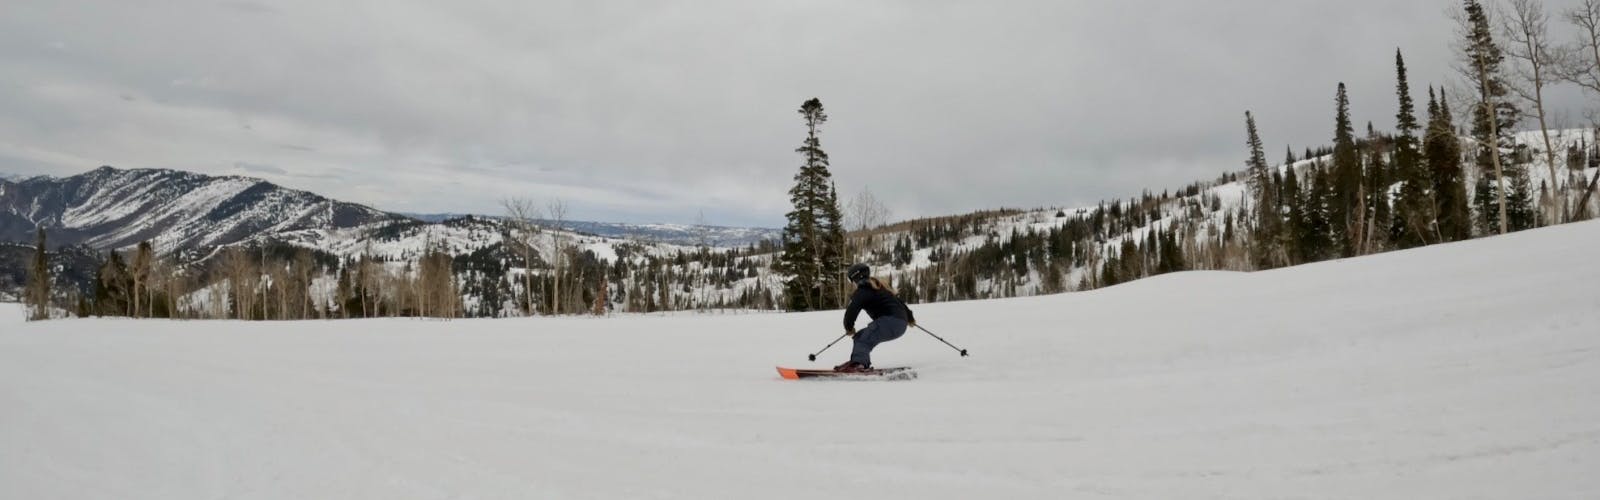 Ski Expert Daryl Morrison skiing the 2023 Blizzard Cochise 106 skis on groomed terrain